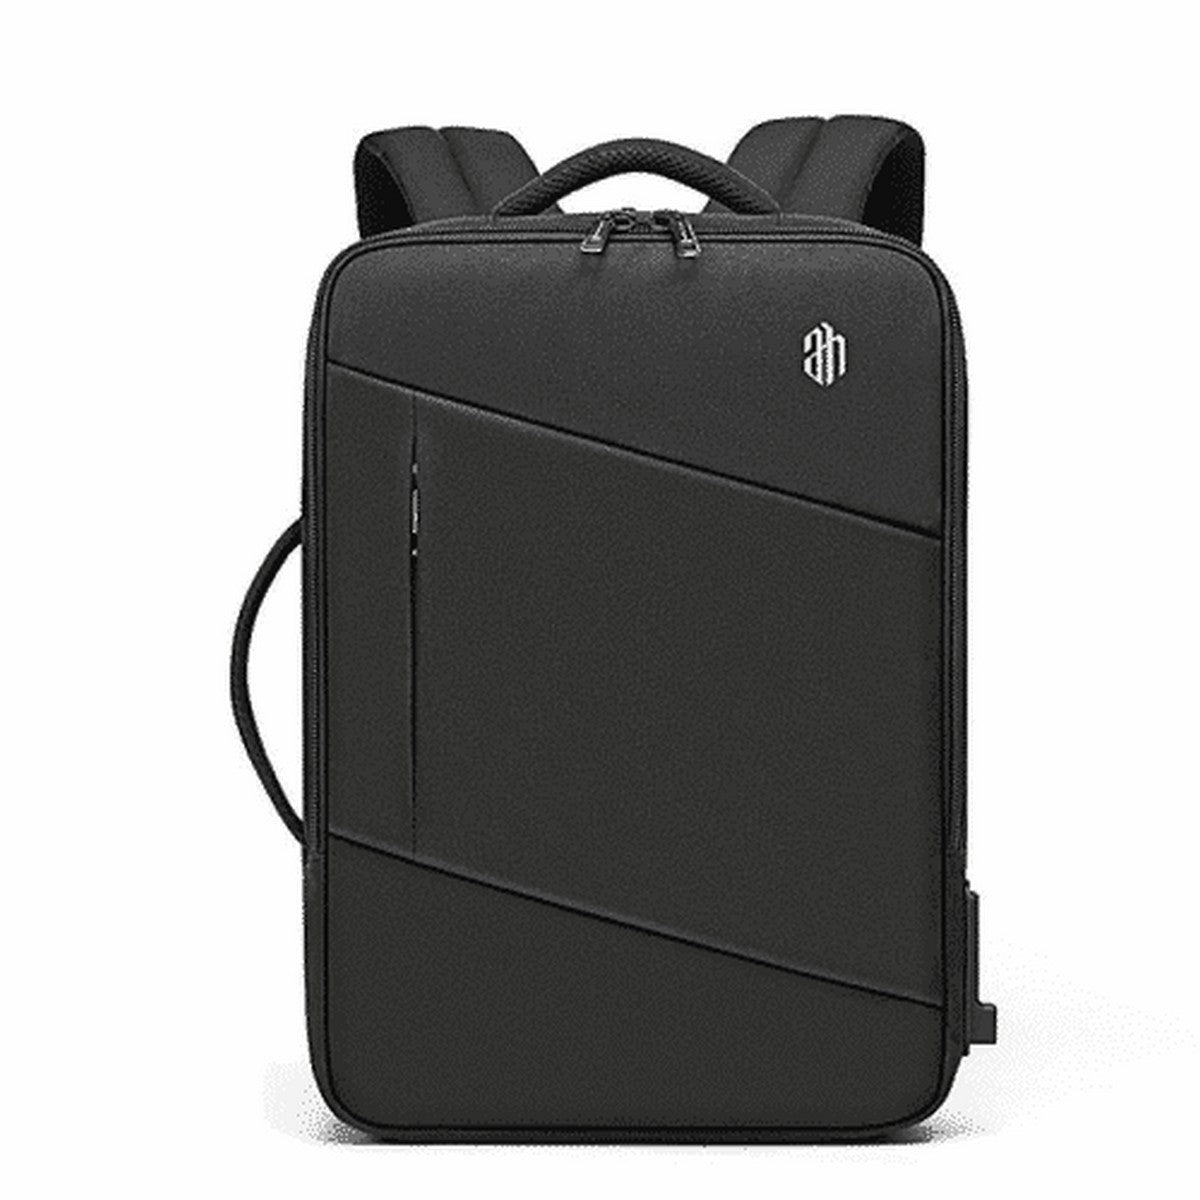 Red Lemon Arctic Hunter 15.6 inch laptop bag with Usb Charging Port for Men  -Black 25 L Laptop Backpack Black - Price in India | Flipkart.com